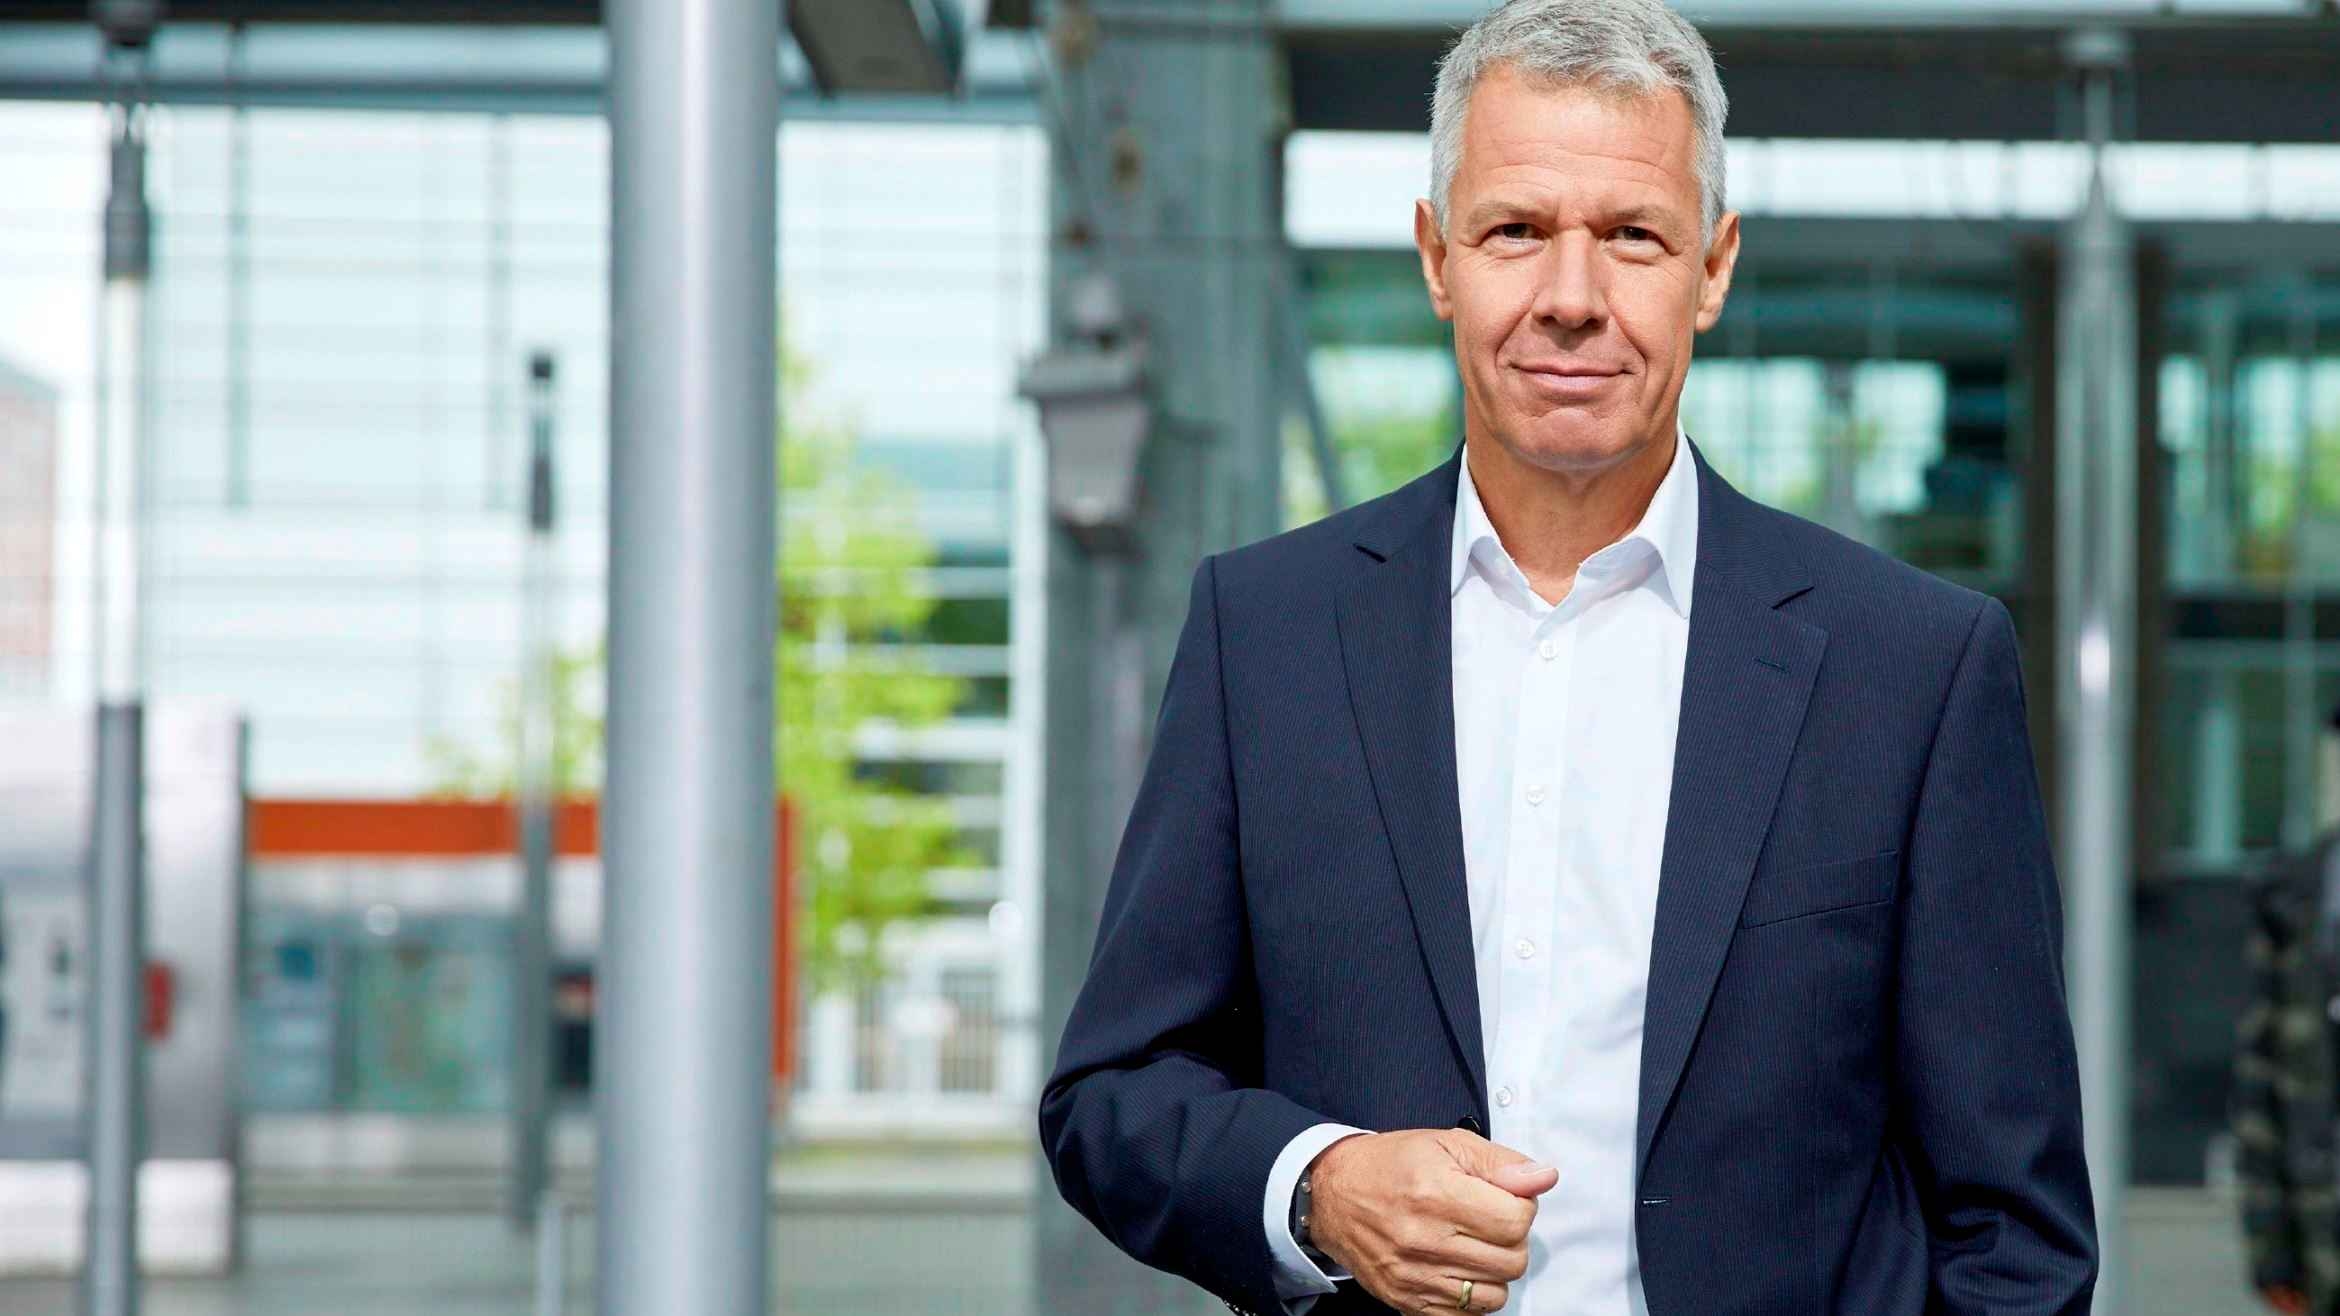 Peter Kloeppel durchleuchtet die Deutsche Bahn

+++ Die Verwendung des sendungsbezogenen Materials ist nur mit dem Hinweis und Verlinkung auf RTL+ gestattet. +++